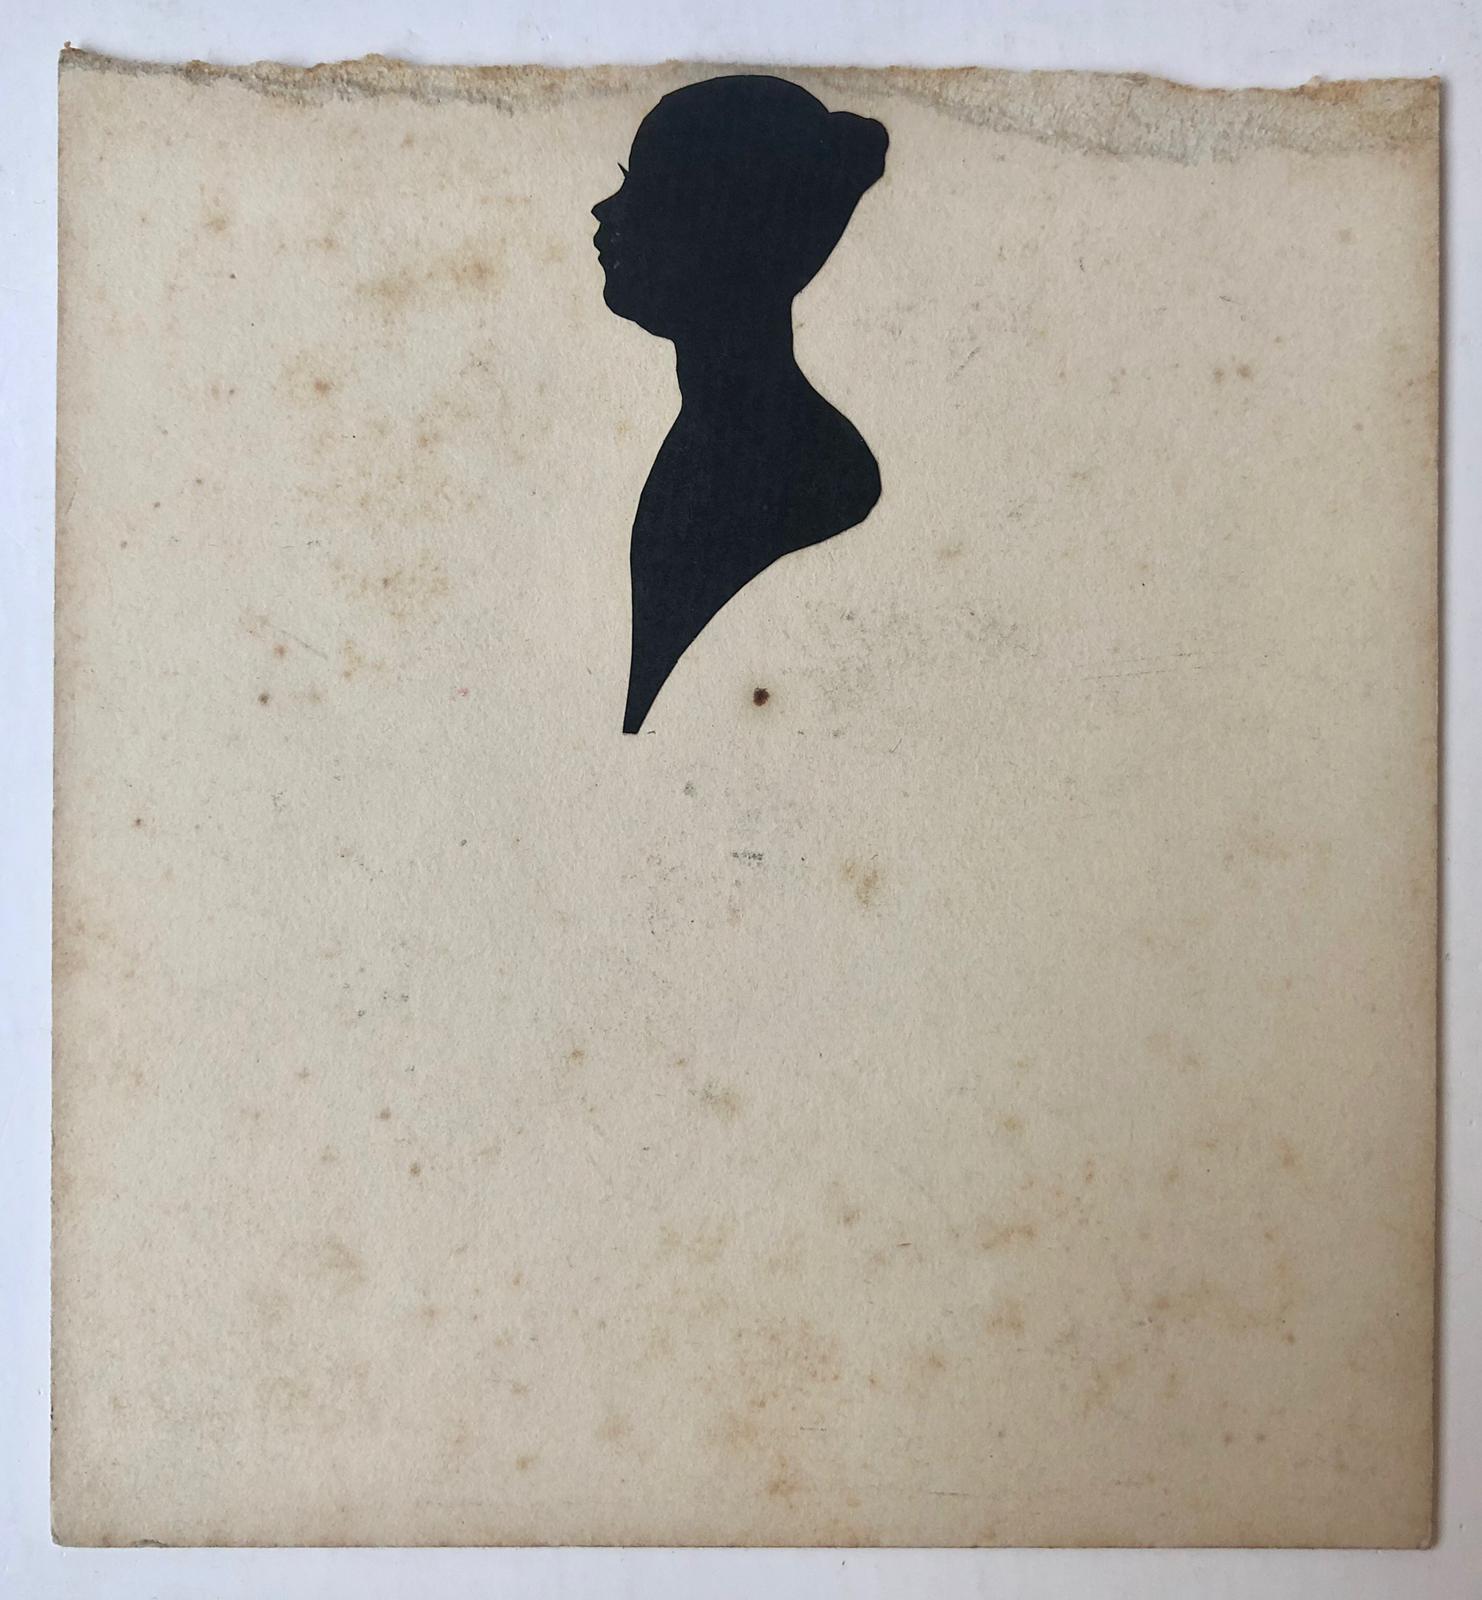  - [Knipkunst, Silhouette portrait] Geknipt silhouetportret van mej. Aimee van Schaak, 19de-eeuws.